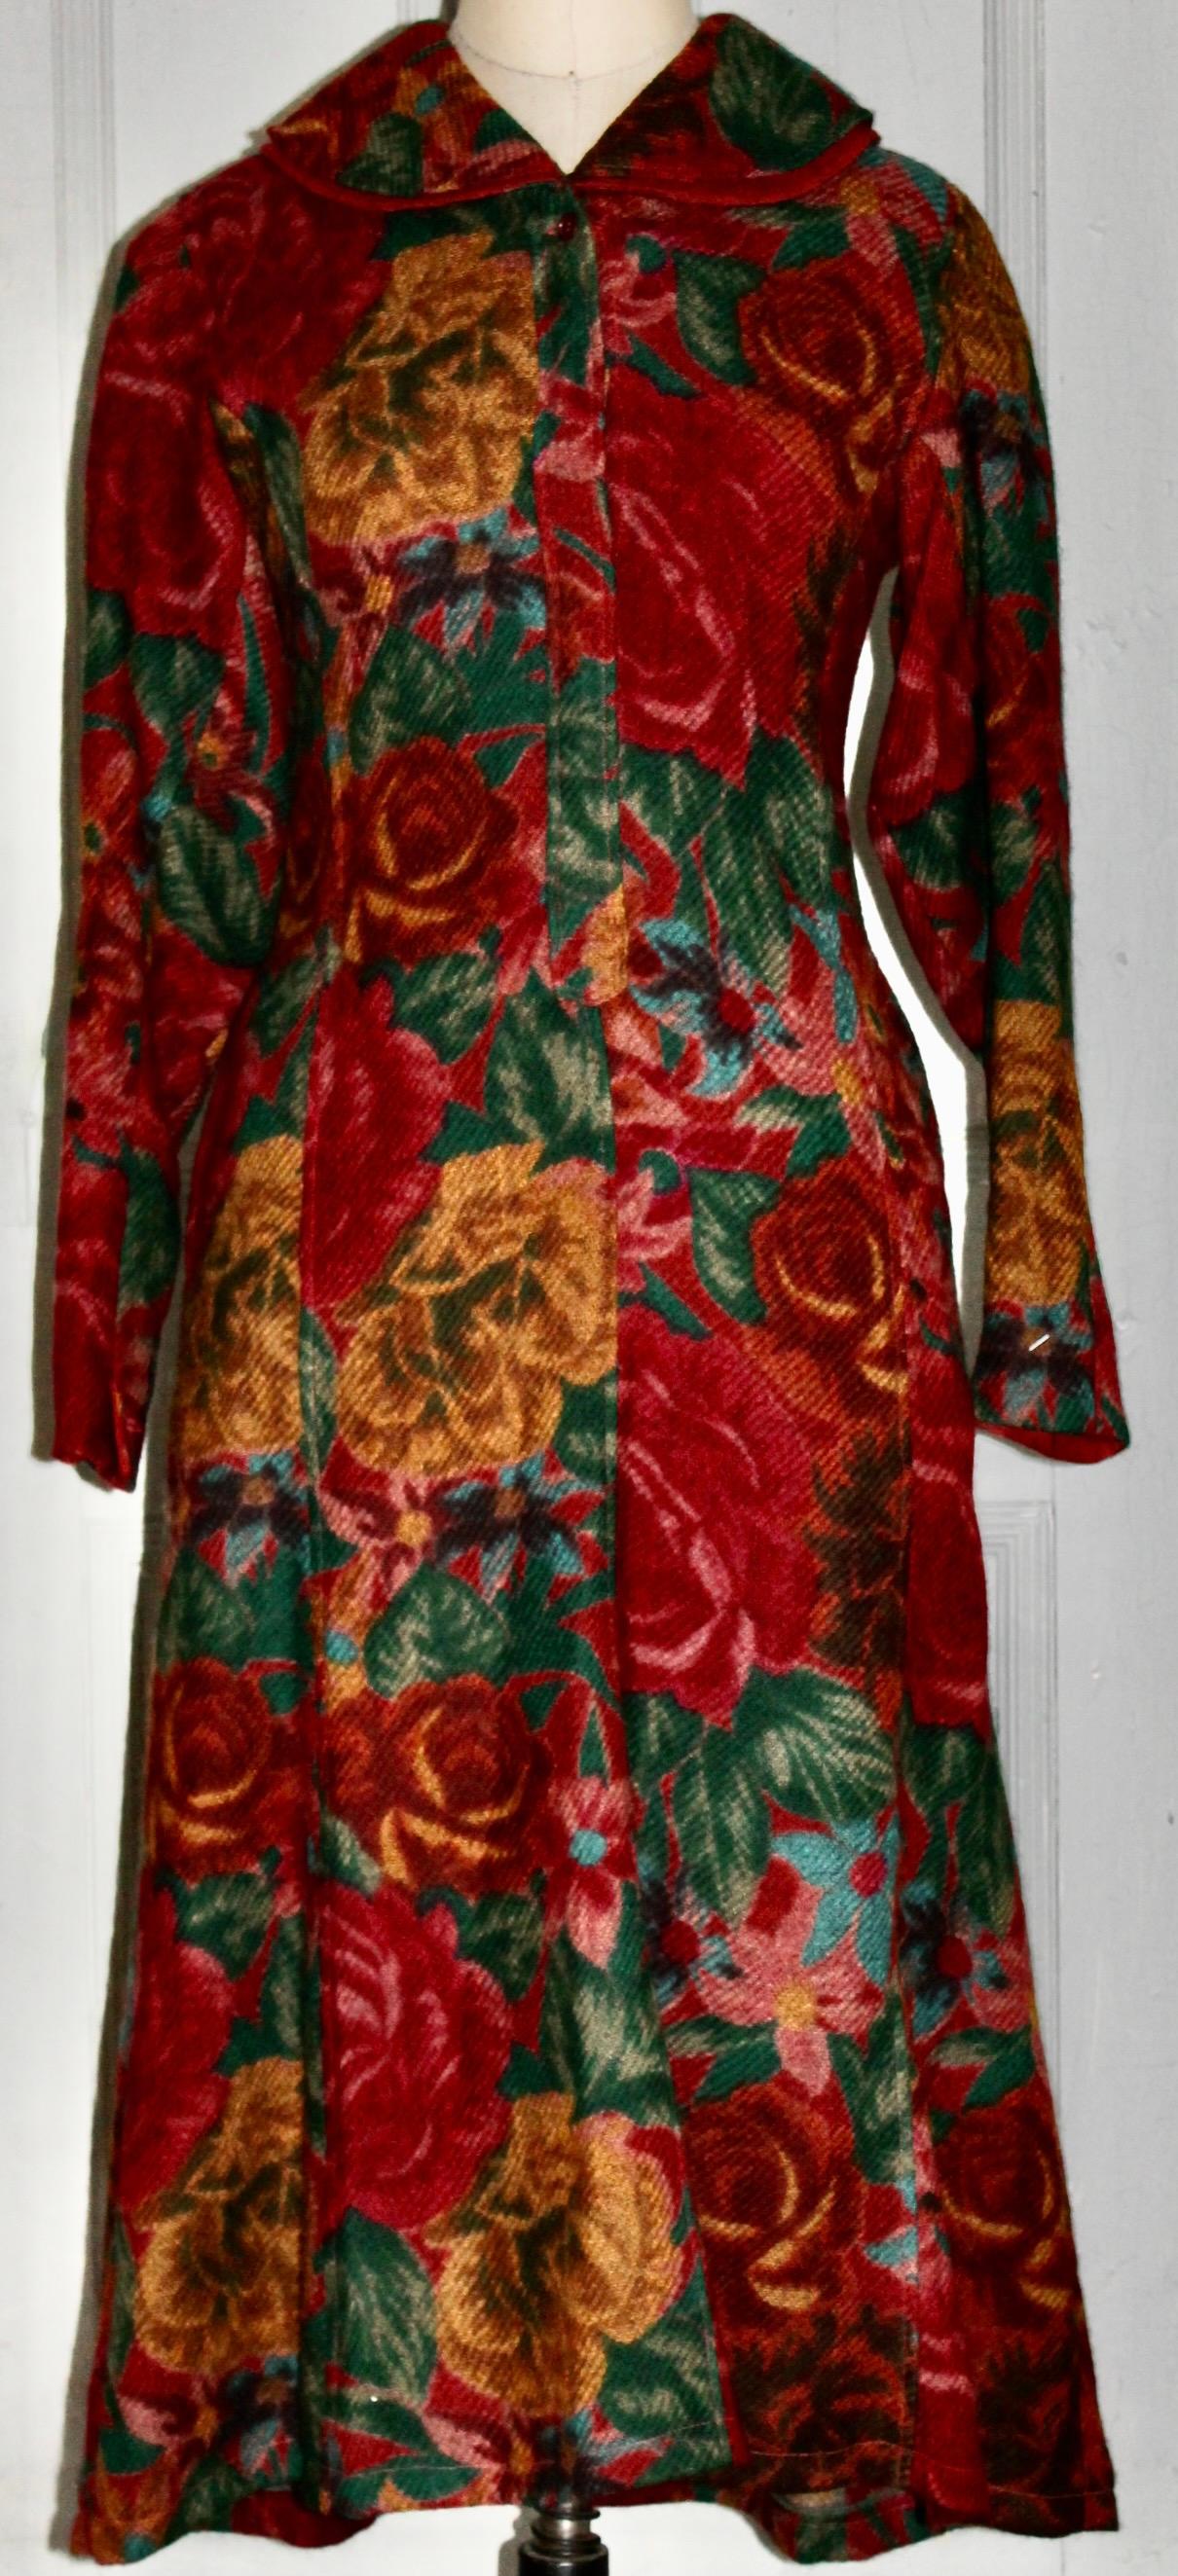 Offrant une robe en laine Kenzo des années 80, entièrement doublée, boutons sur le devant, taille étroite.